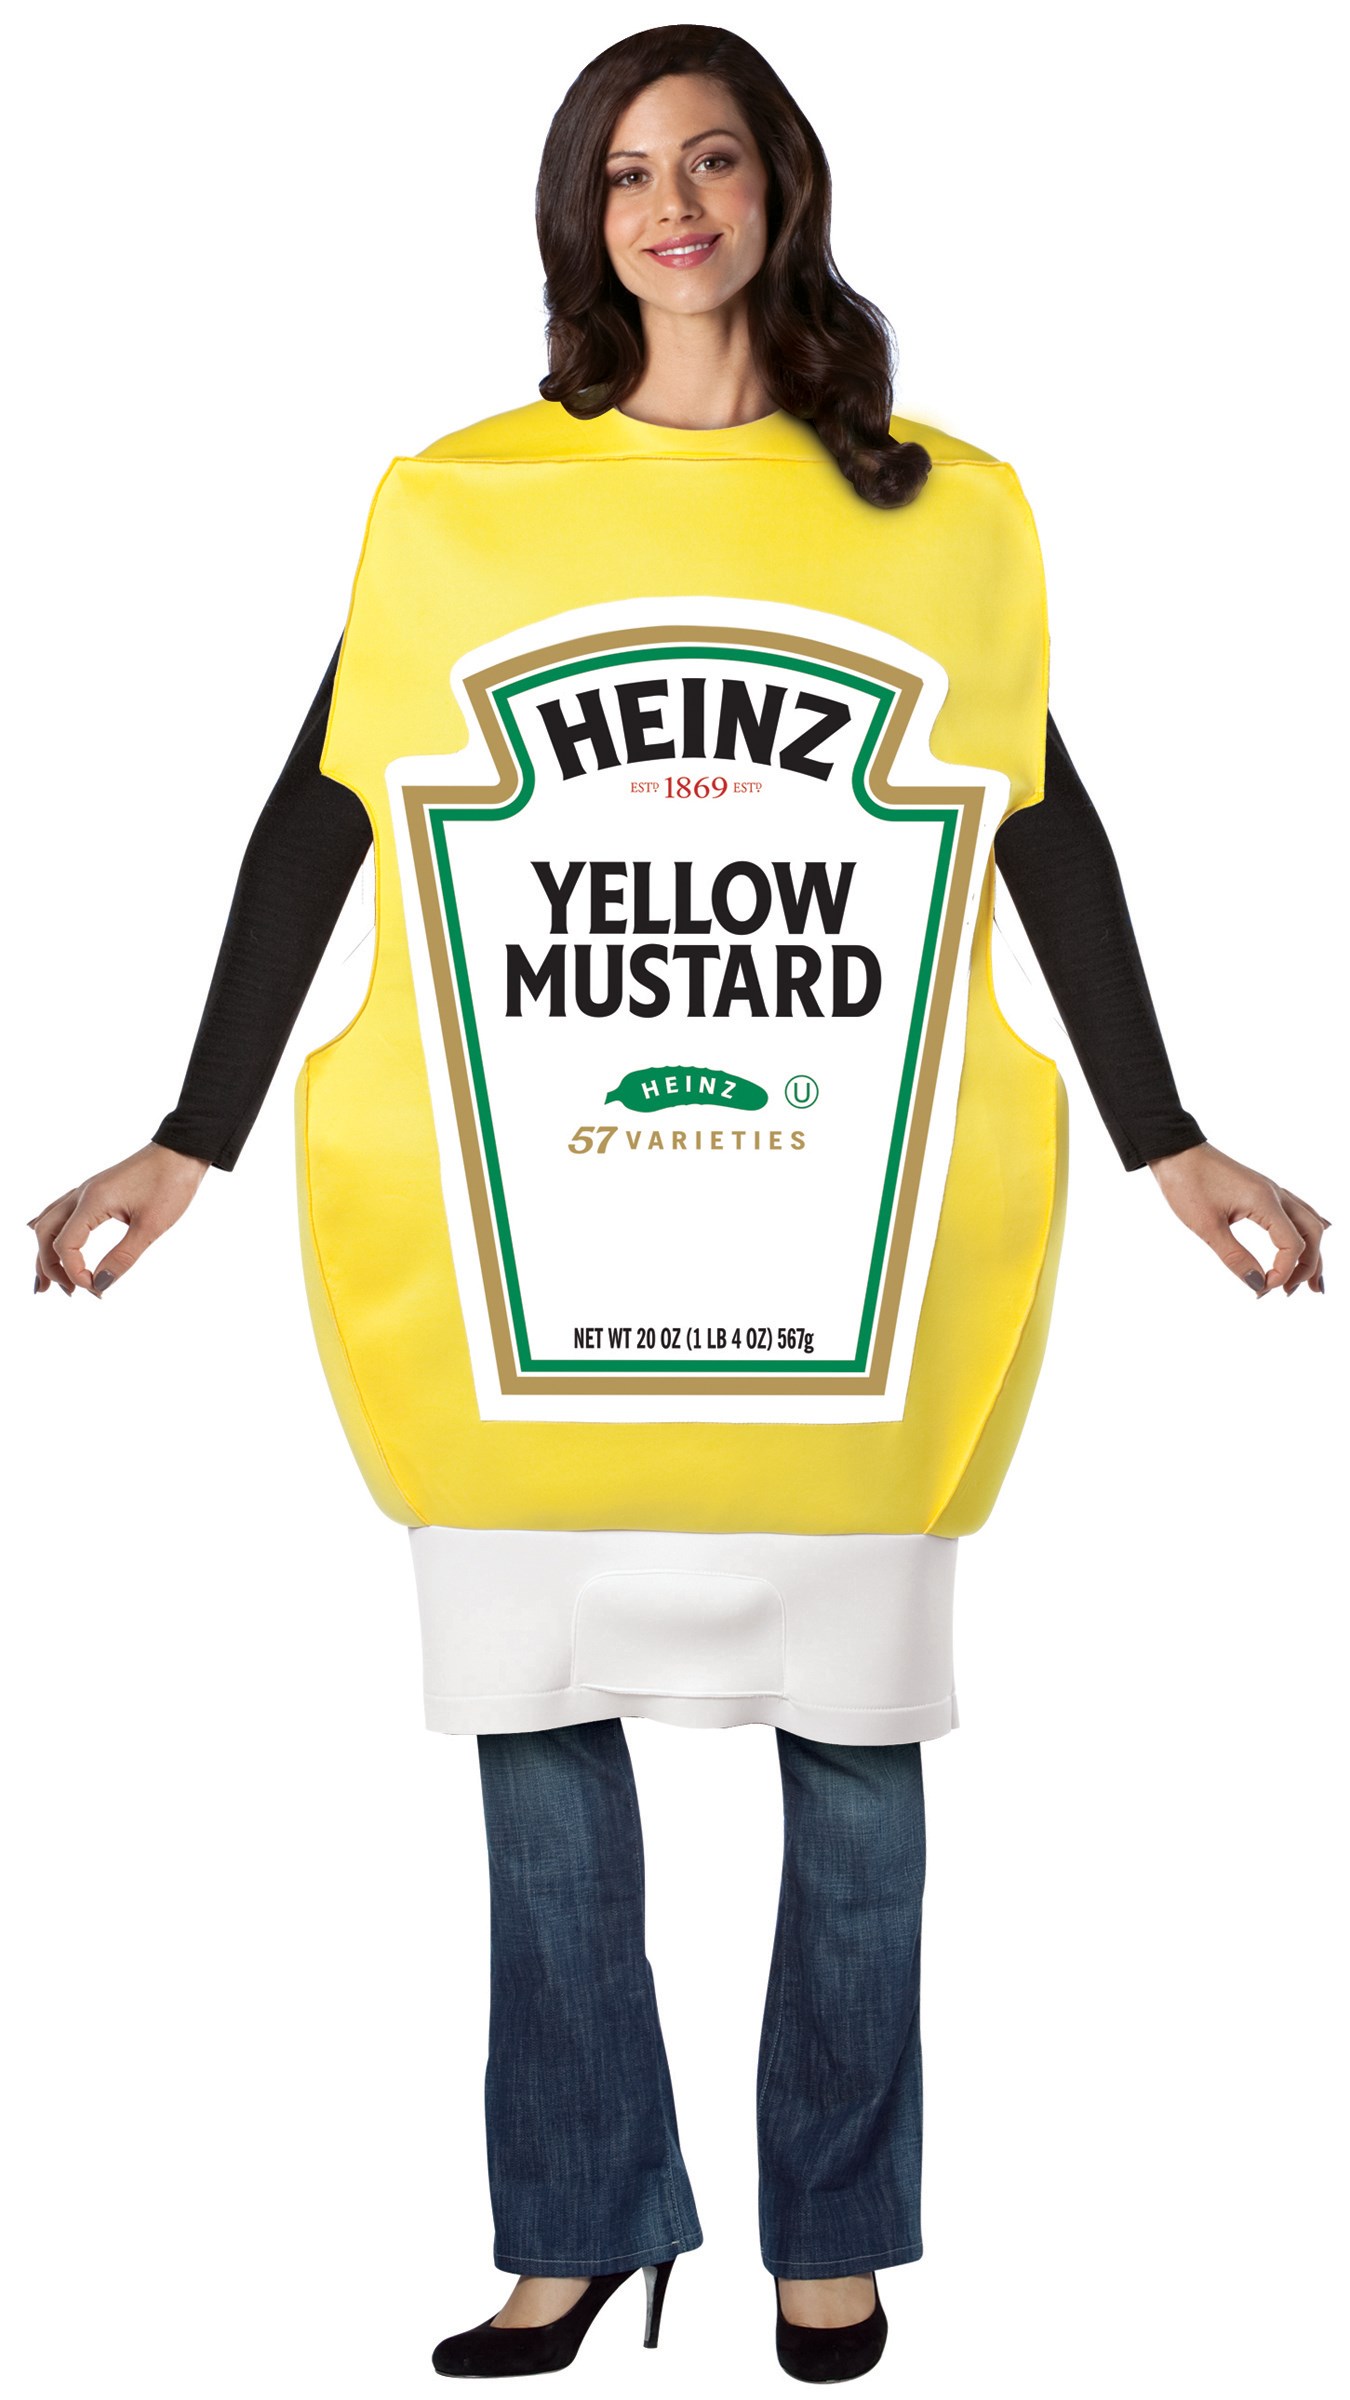 Heinz Mustard Squeeze Bottle Adult Costume